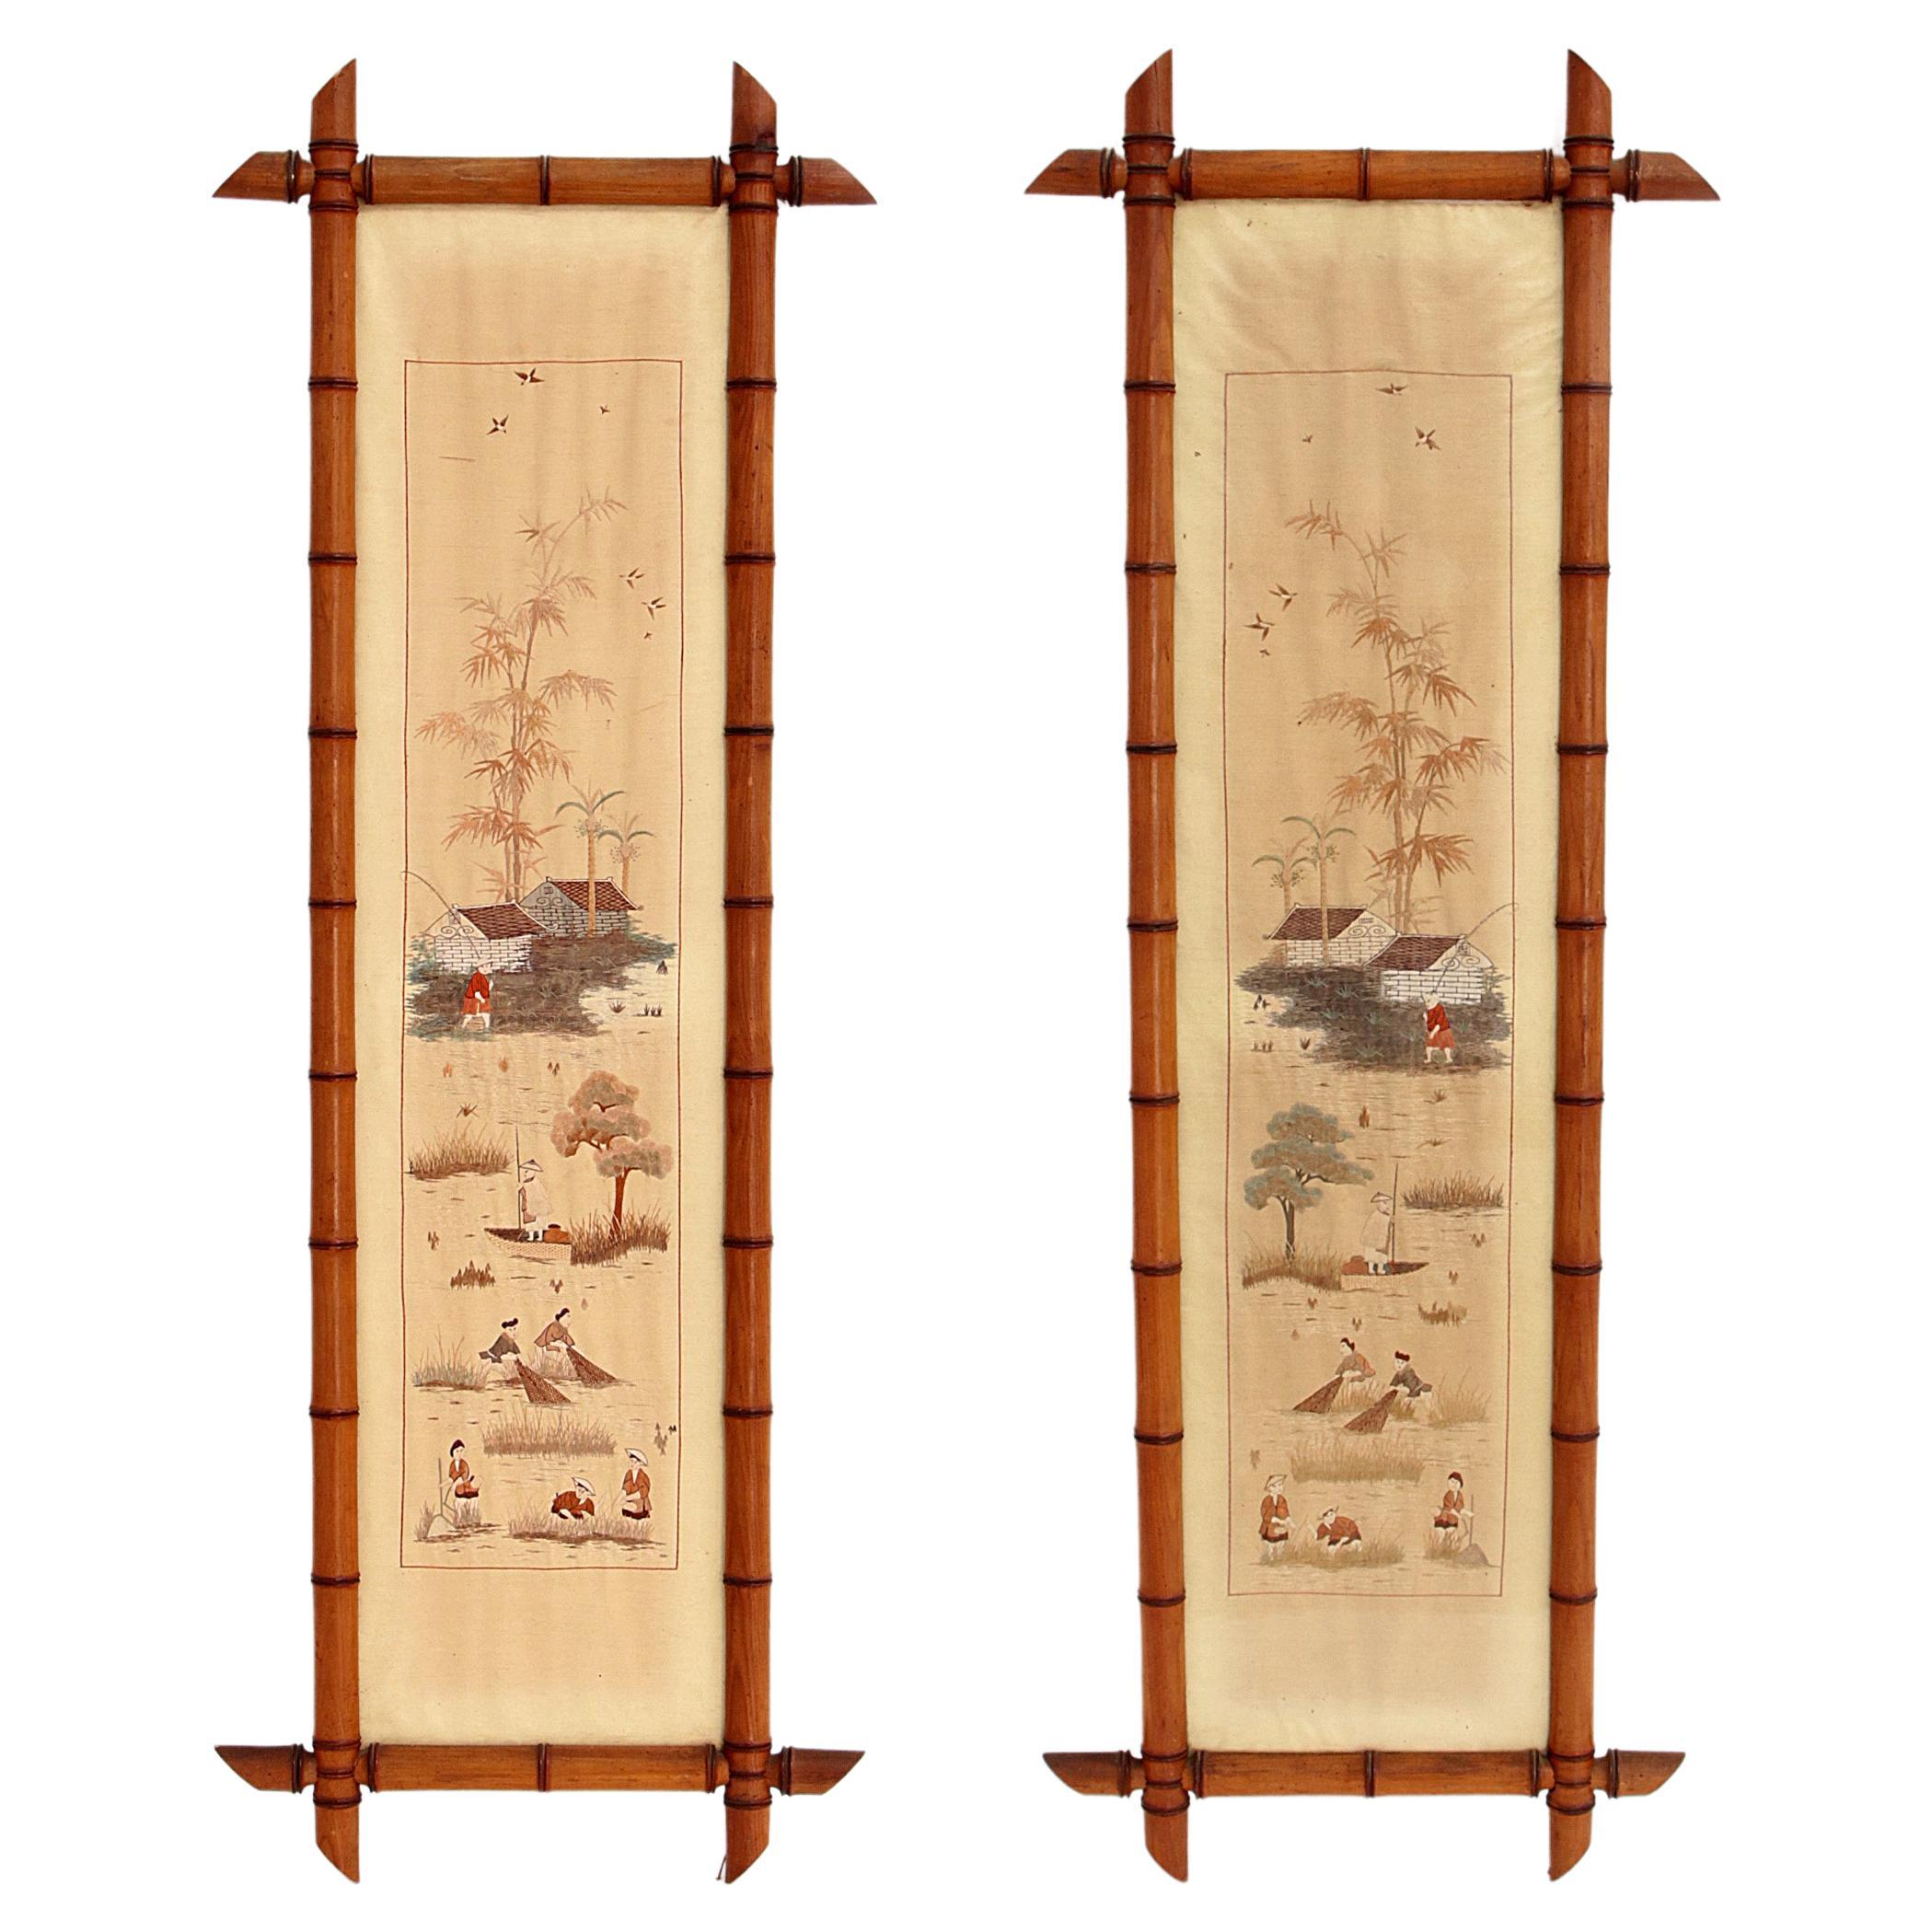 Chinesische Seidenteppiche des 19. Jahrhunderts in Bambusrahmen